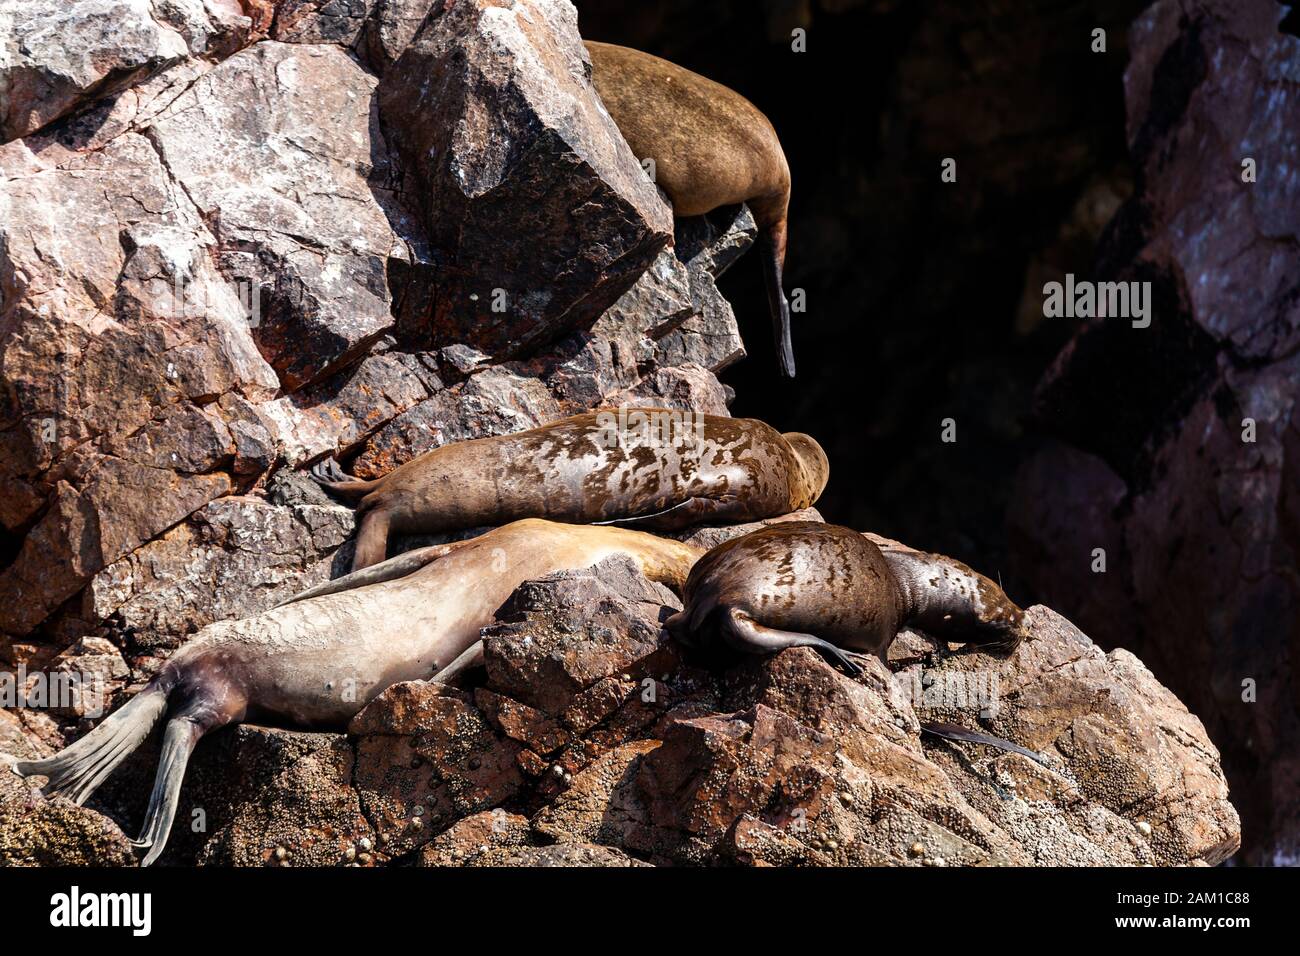 Quatre lions de mer reposent sur un rocher..Molt saisonnier, îles Ballestas, Réserve naturelle de Paracas, Pérou, Amérique latine. Gros plan. Banque D'Images